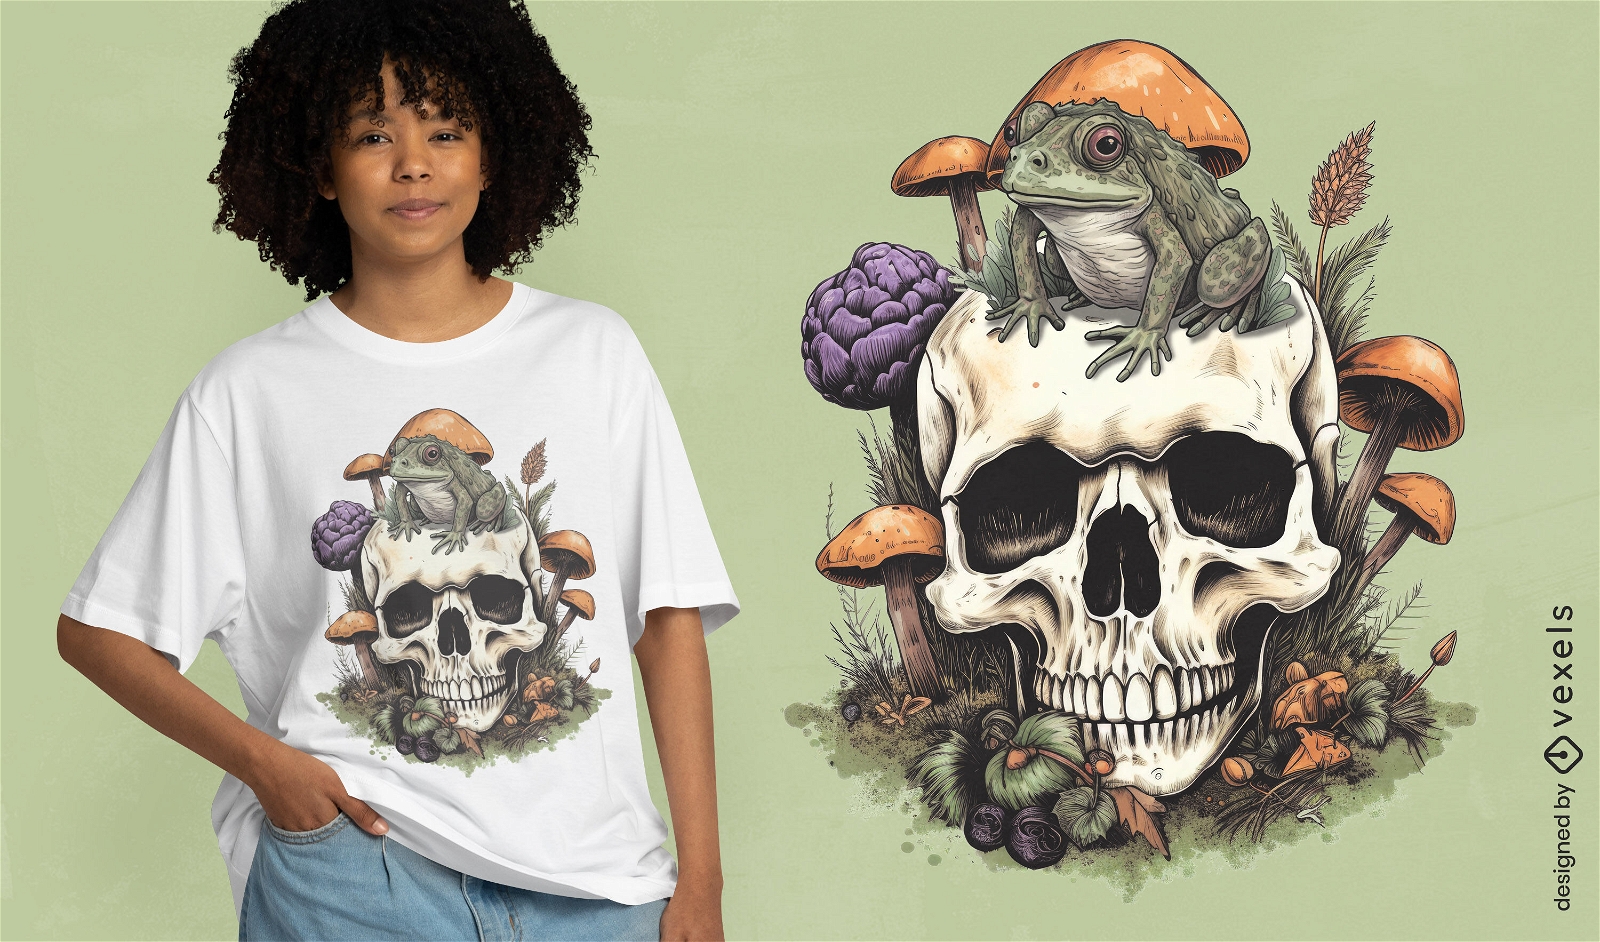 Diseño de camiseta de rana en un cráneo cpttagecore